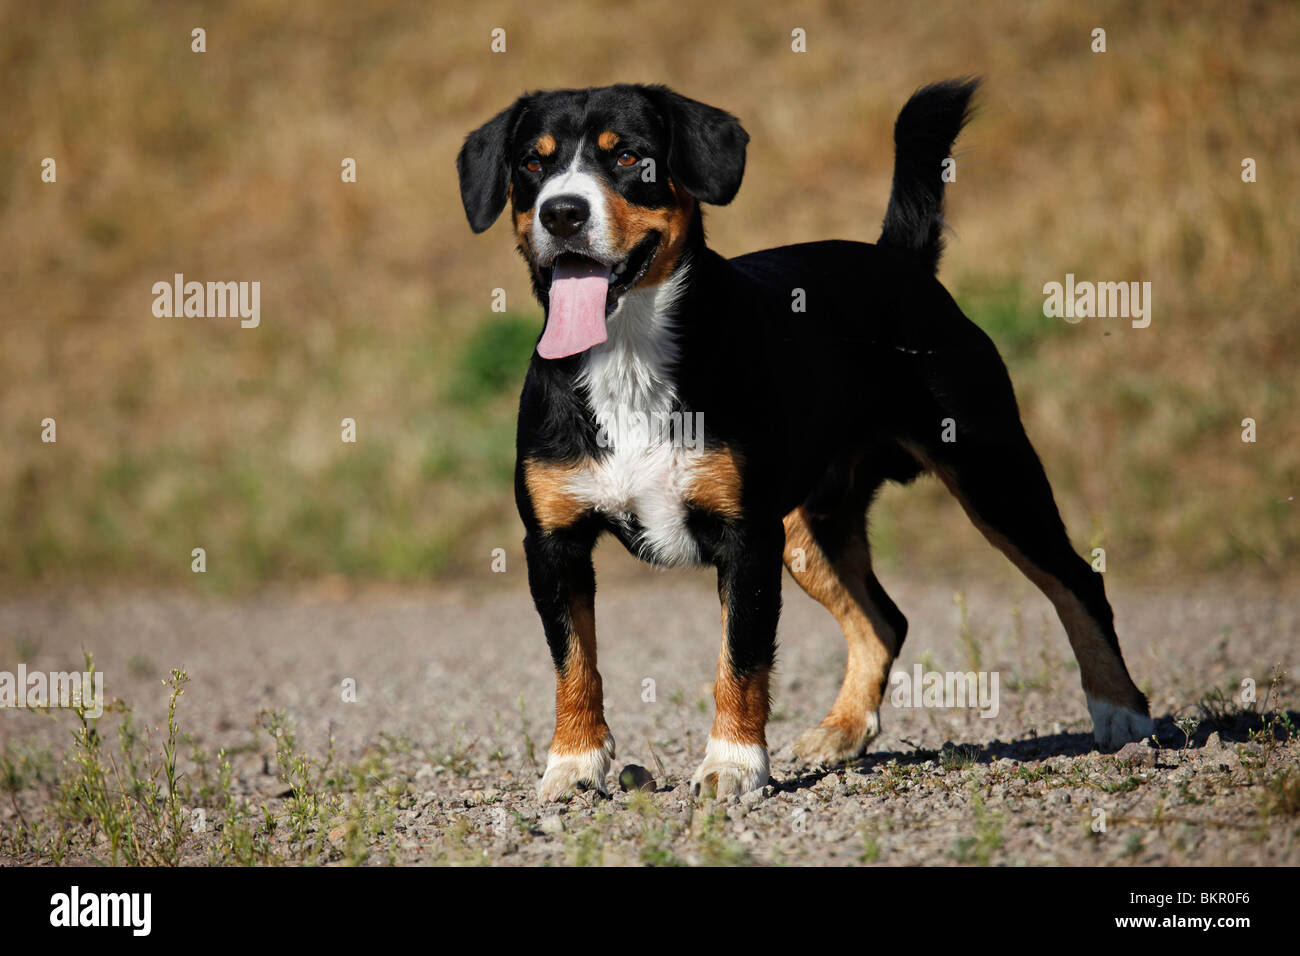 stehender Entlebucher Sennenhund / standing Entlebucher Mountain Dog Stock Photo